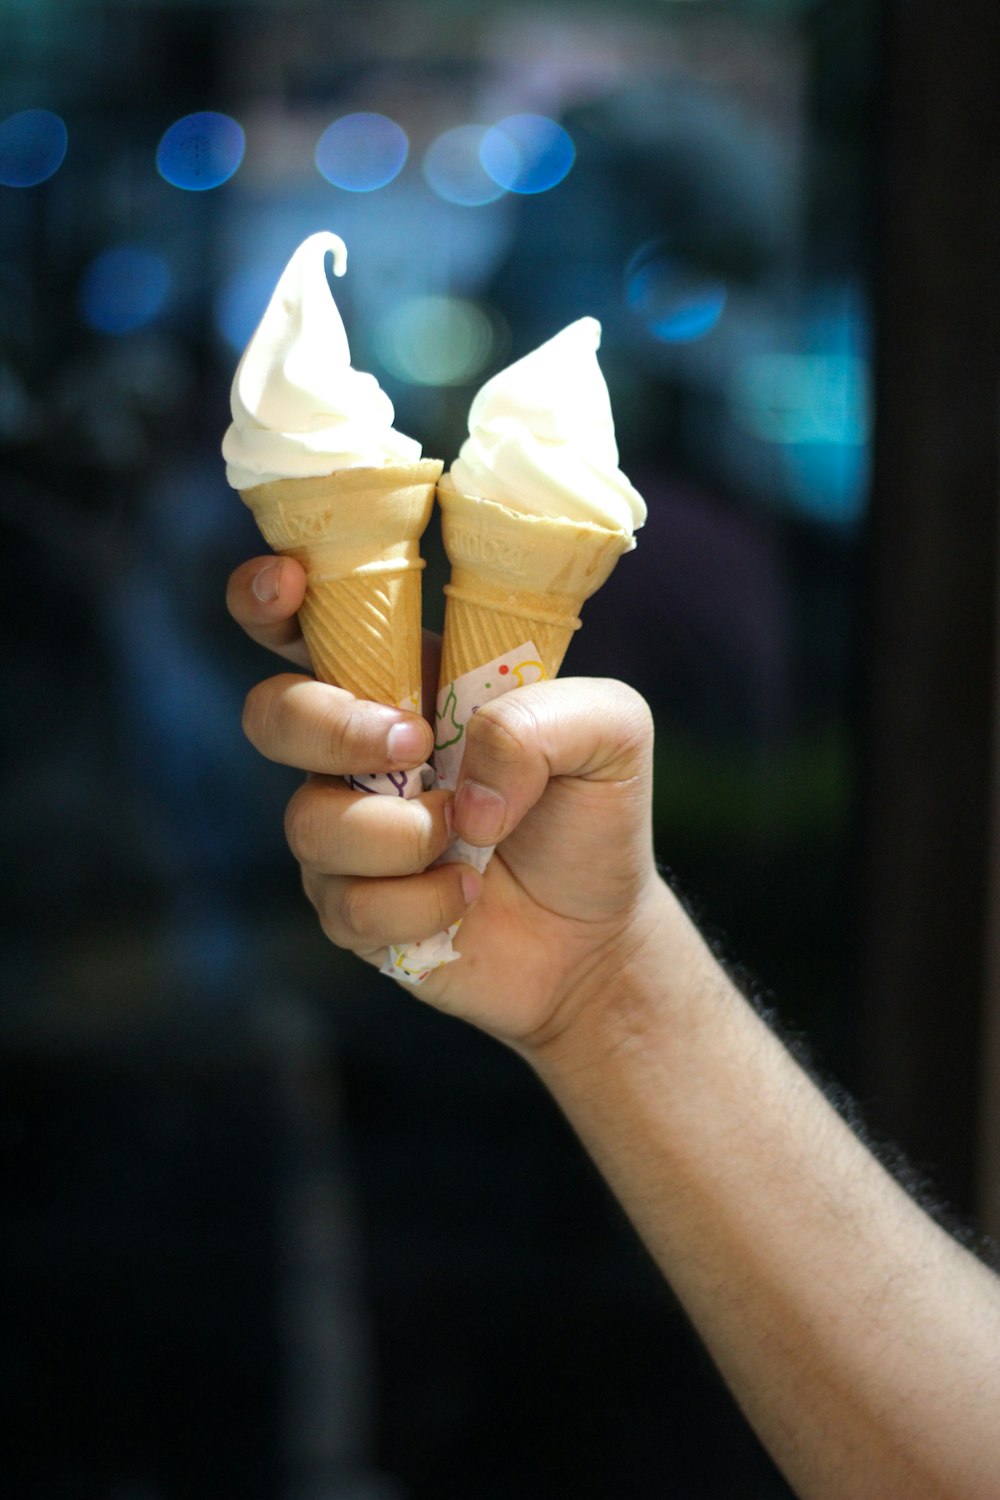 Una persona sosteniendo dos conos de helado en la mano